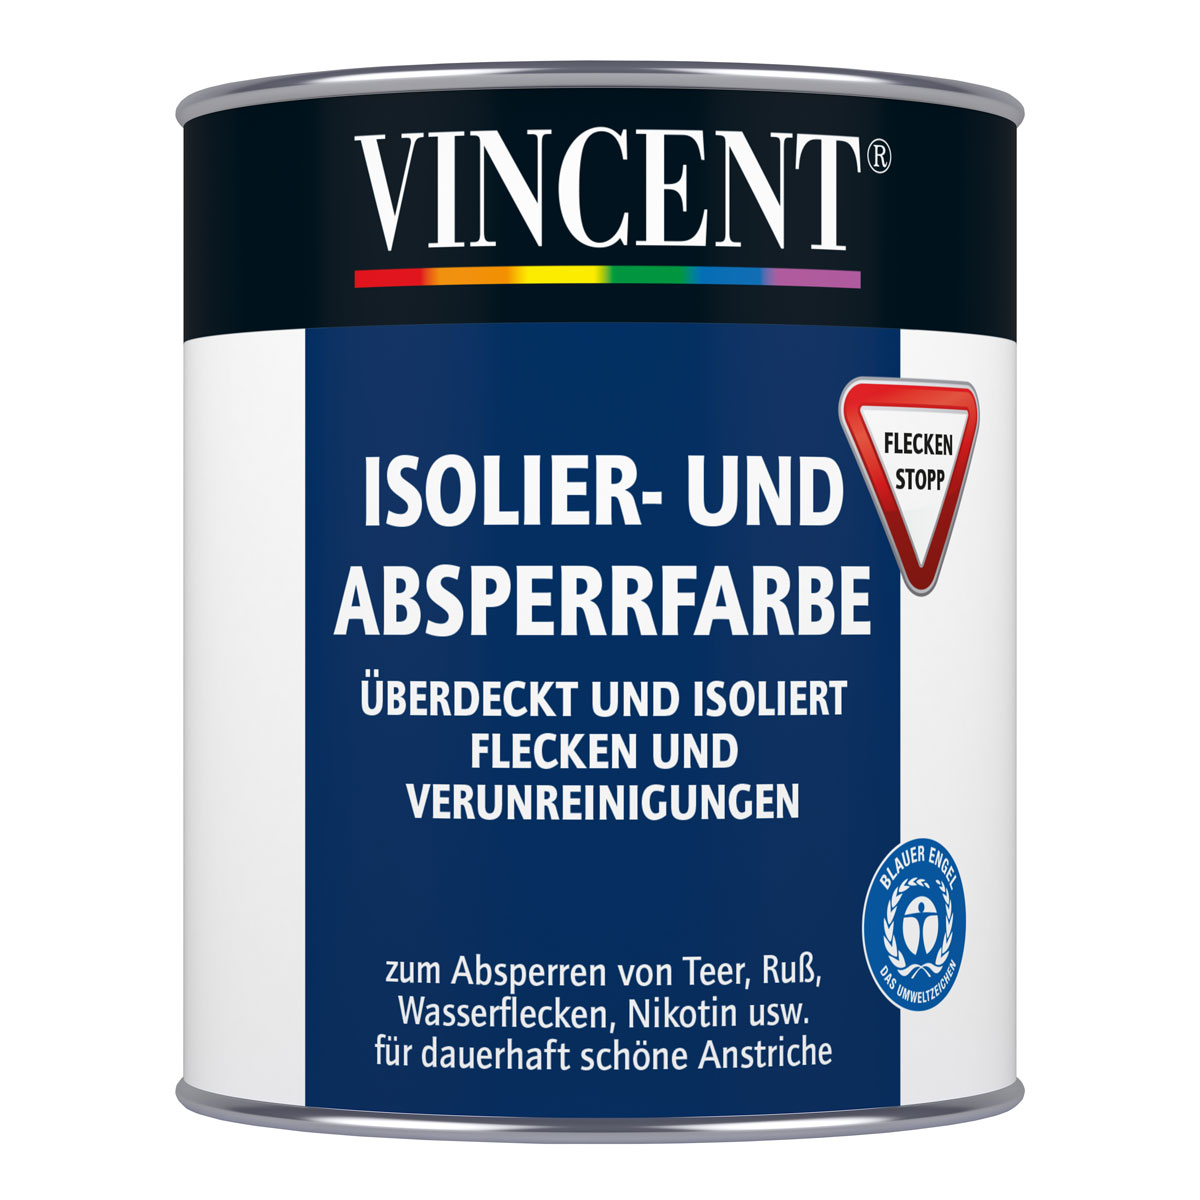 Vincent Isolier- und Absperrfarbe 0,75 L, 0.75, 0,75